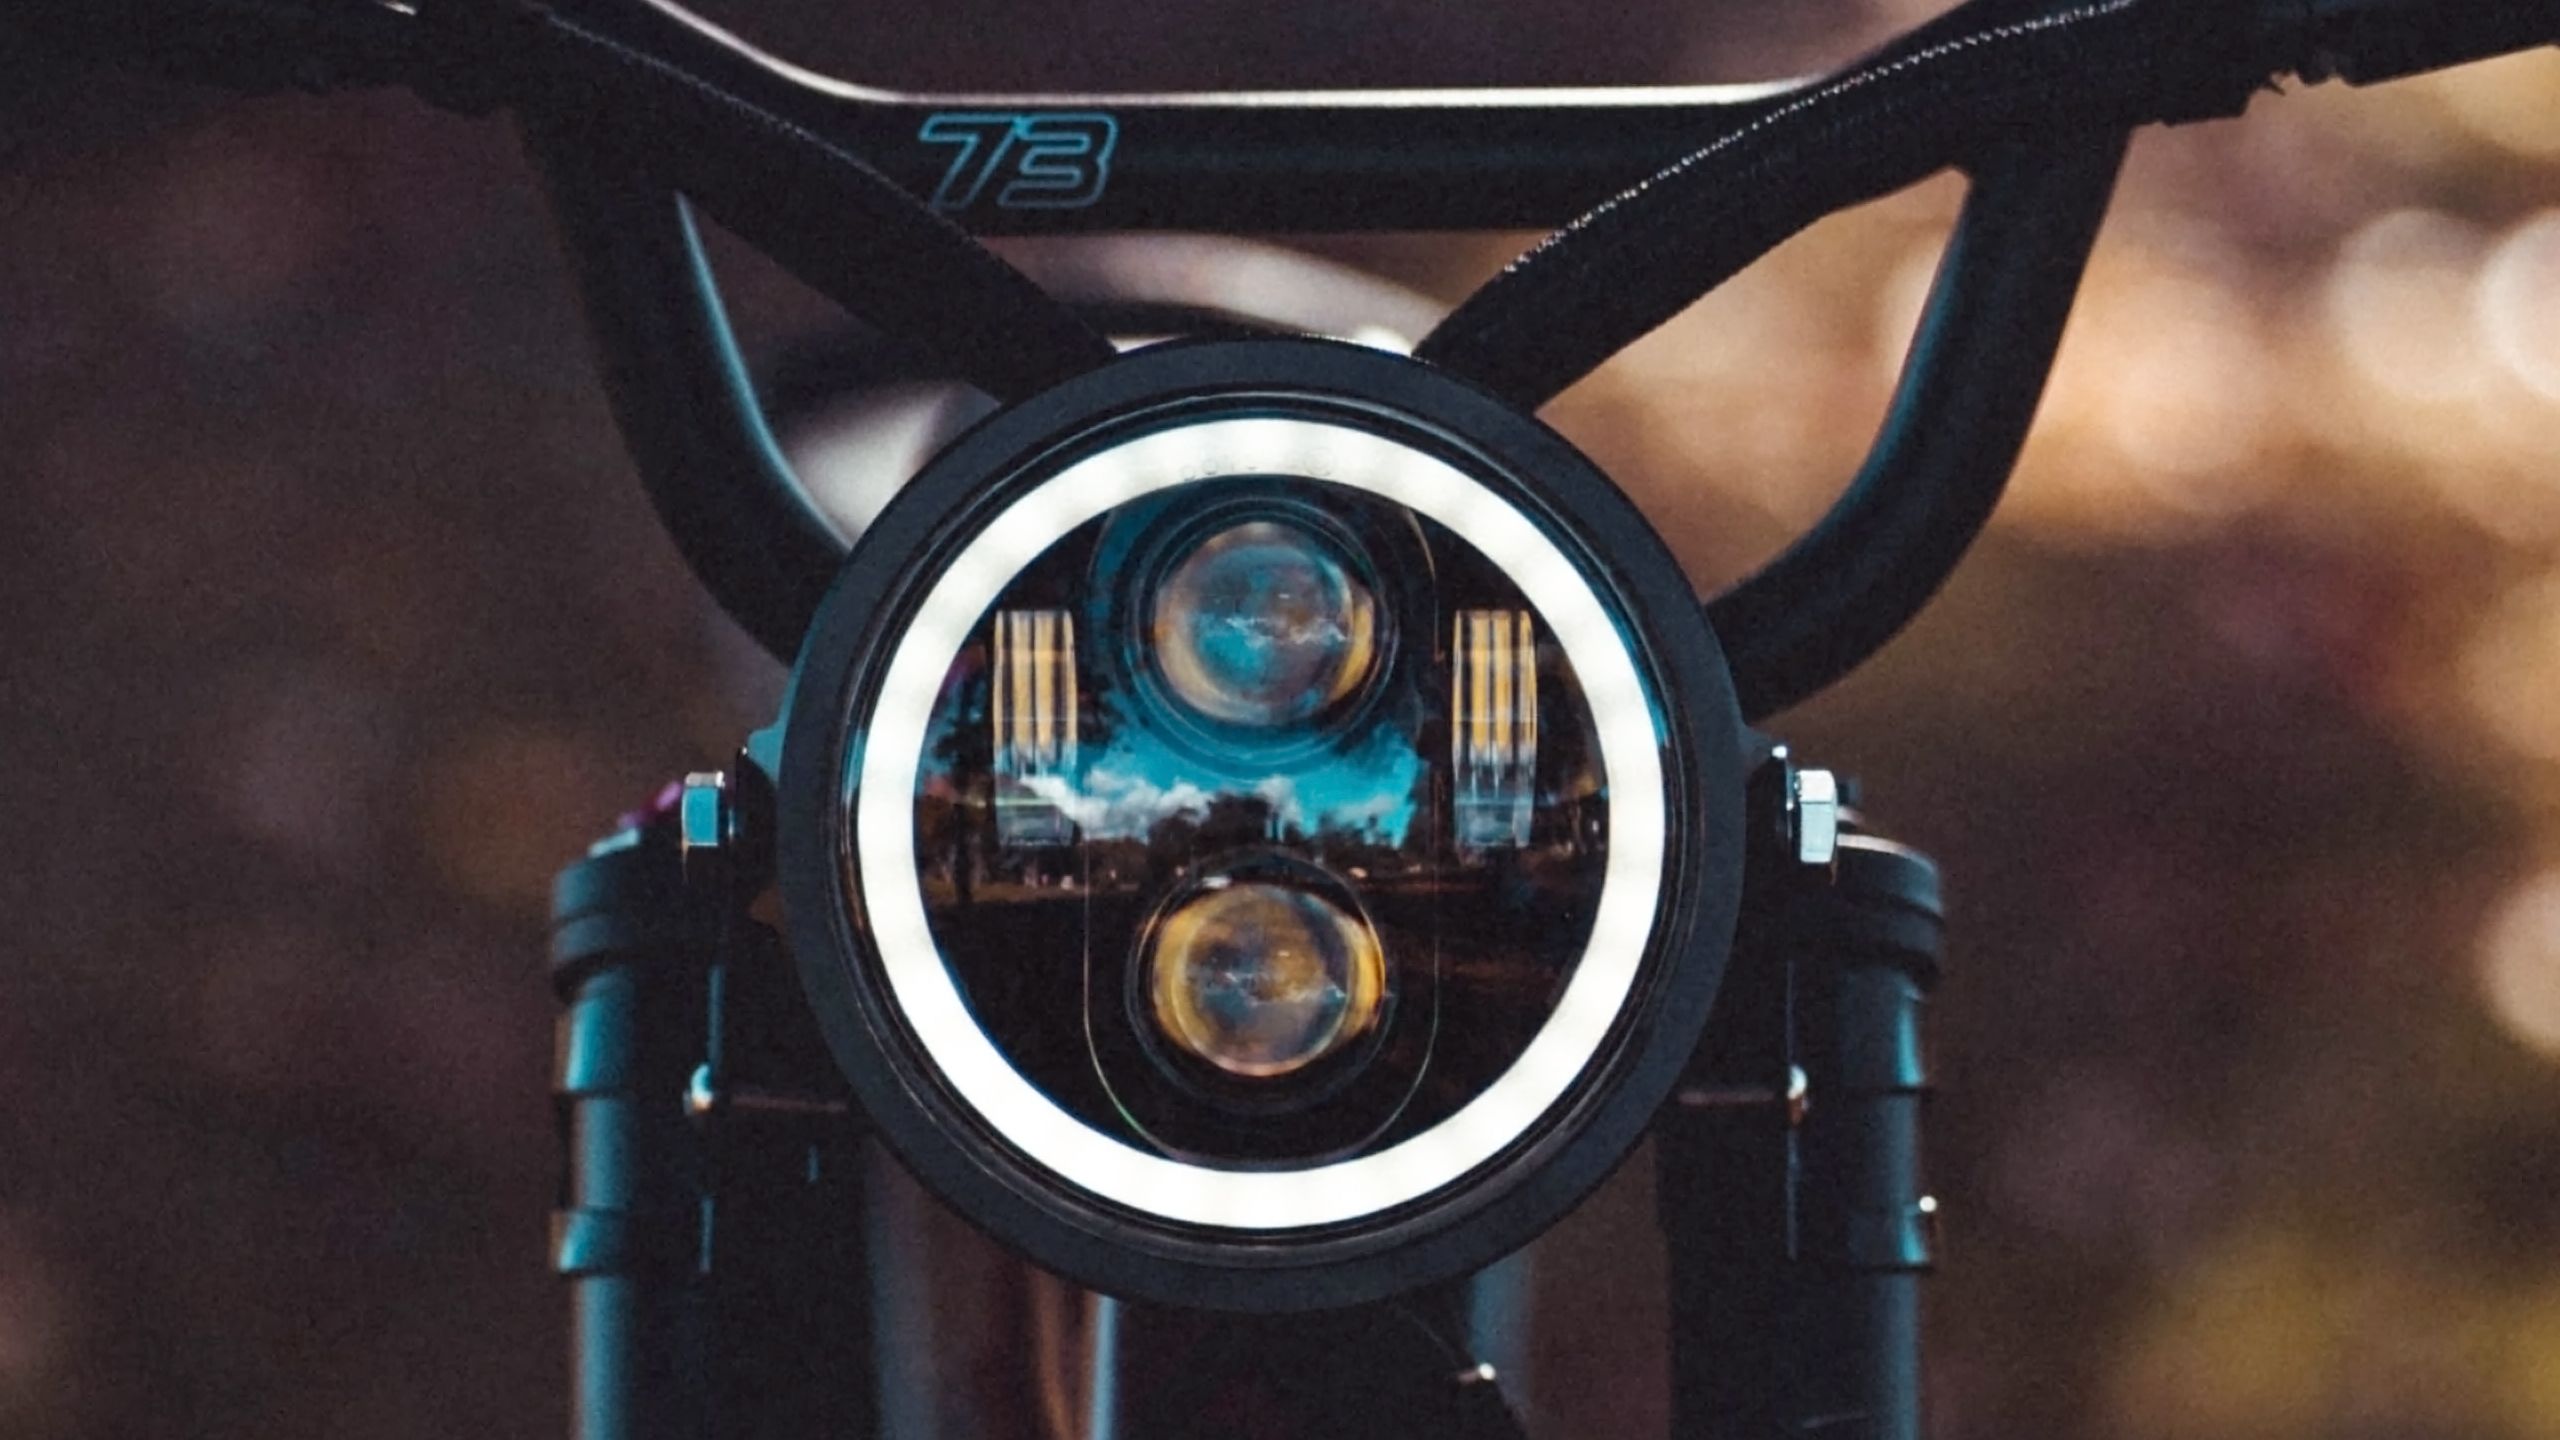 A Super73 e-bike headlight.